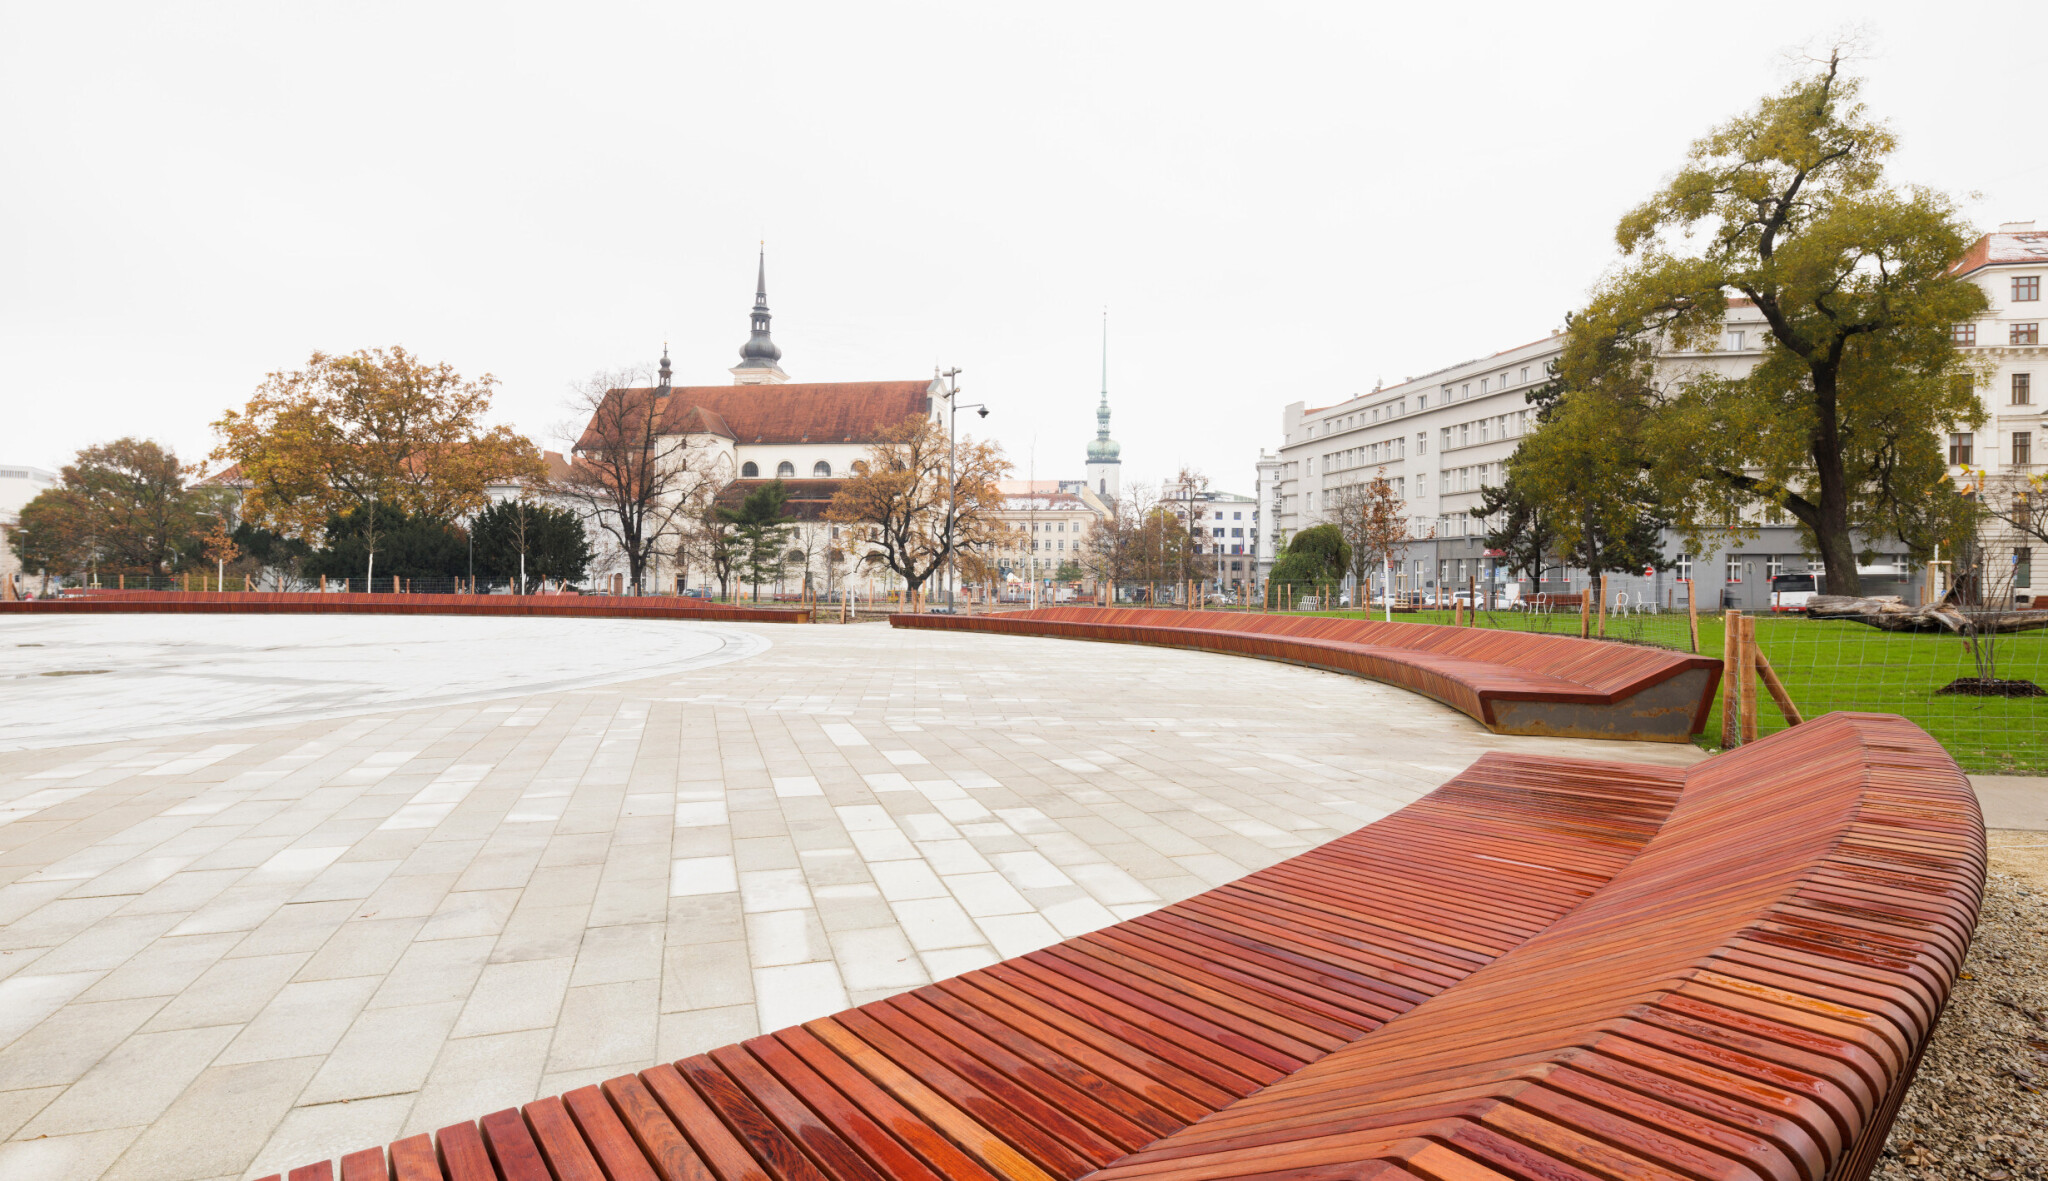 Lavička dlouhá jak Brno. V moravské metropoli otevřeli park s novou dominantou od mmcité